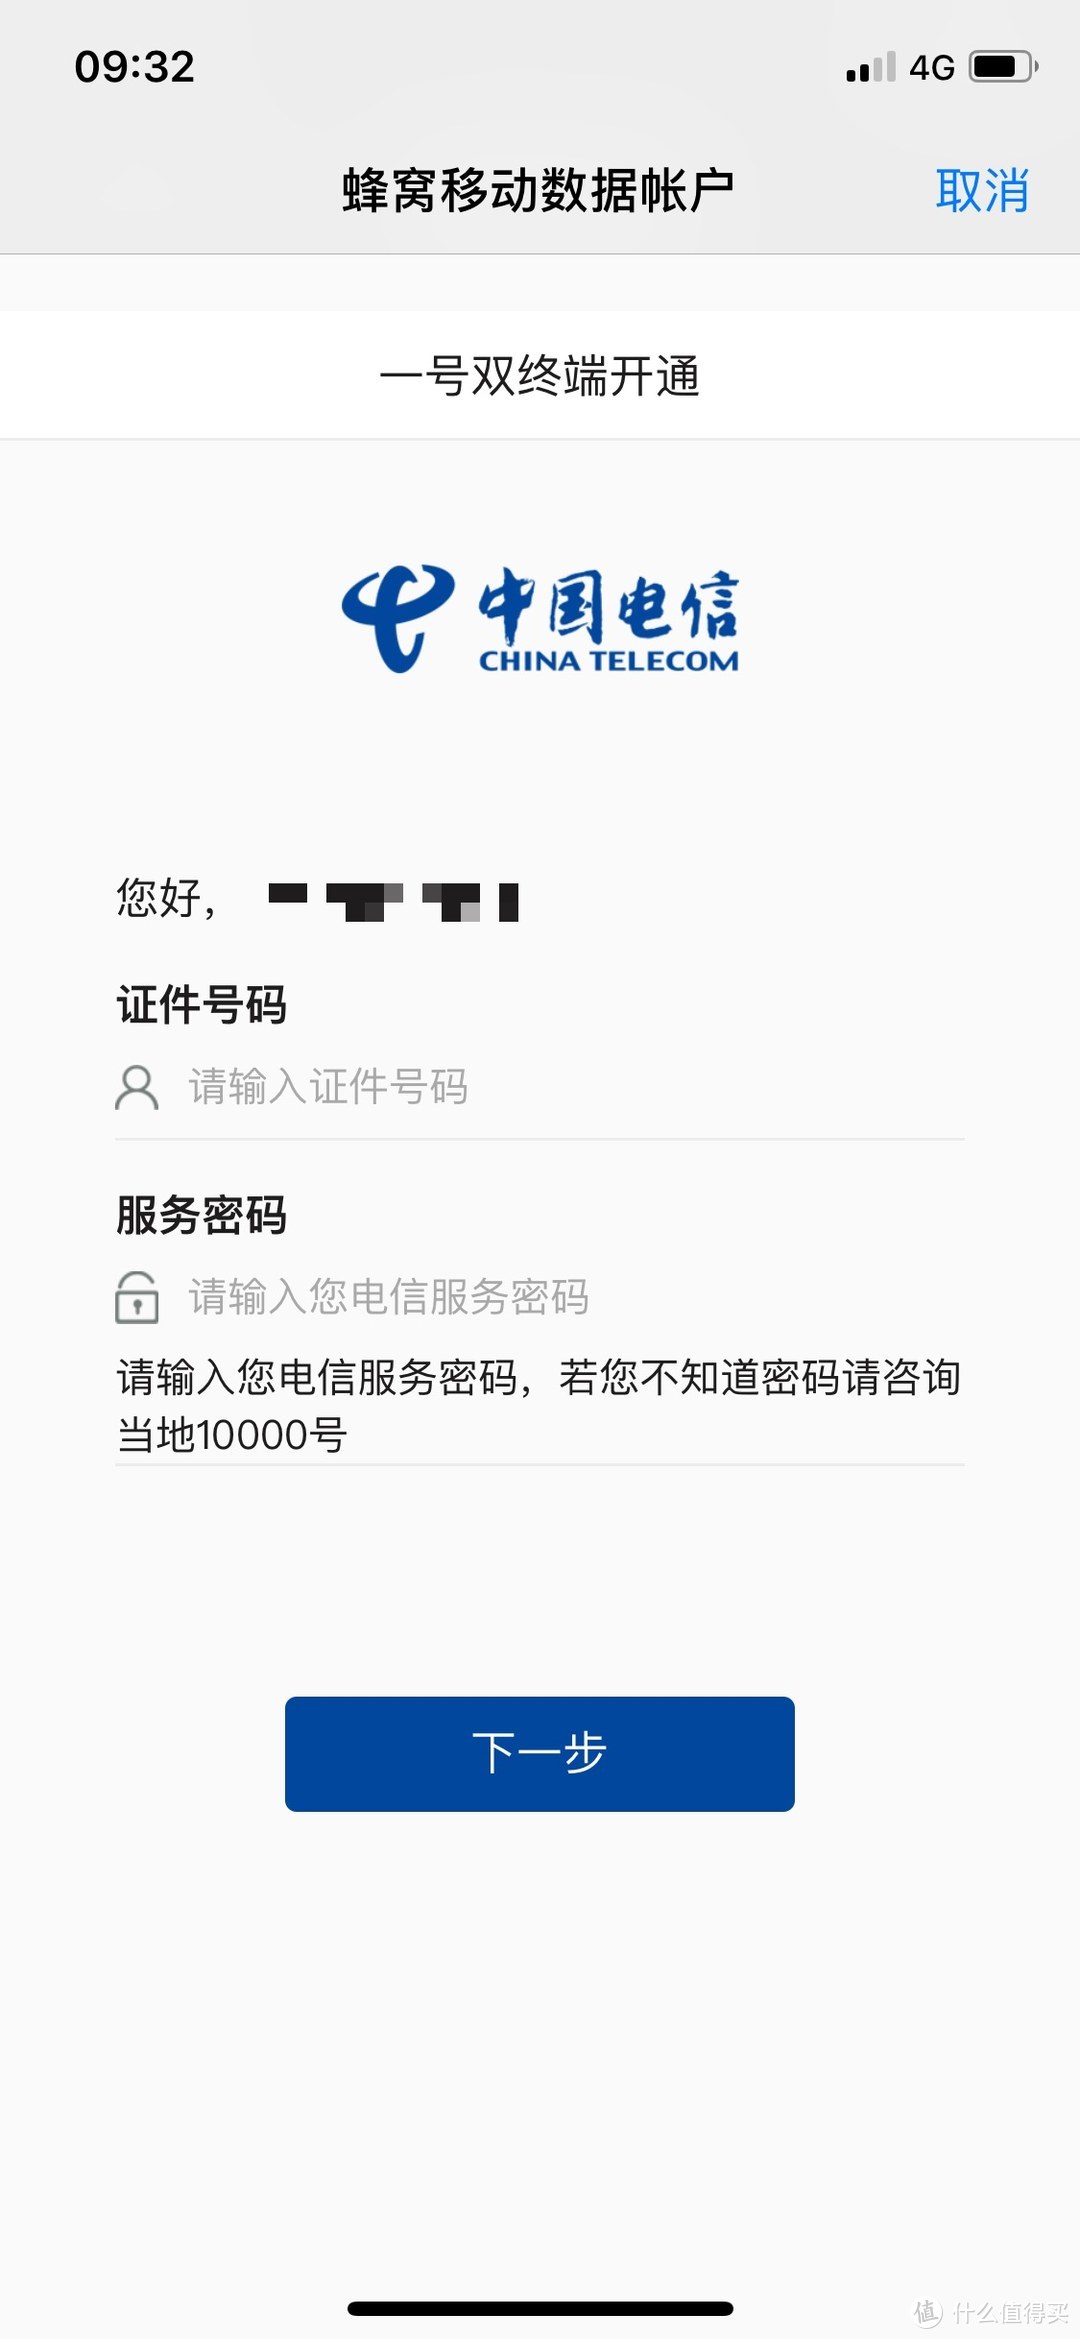 蜂窝数据版 Apple Watch 开通中国电信 eSIM 体验